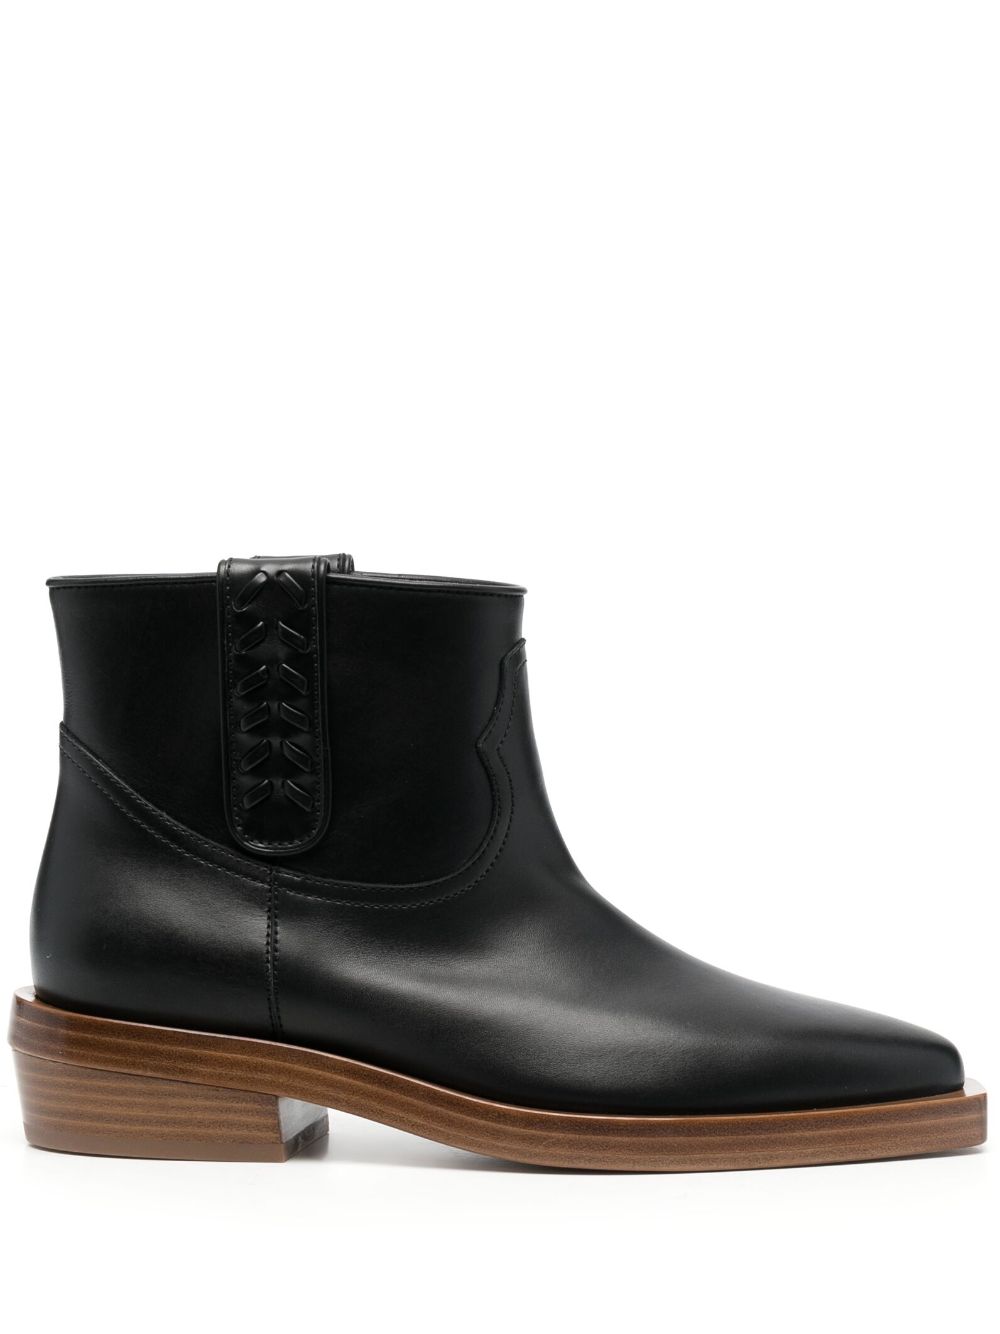 Gabriela Hearst Reza 45mm leather ankle boots - Black von Gabriela Hearst